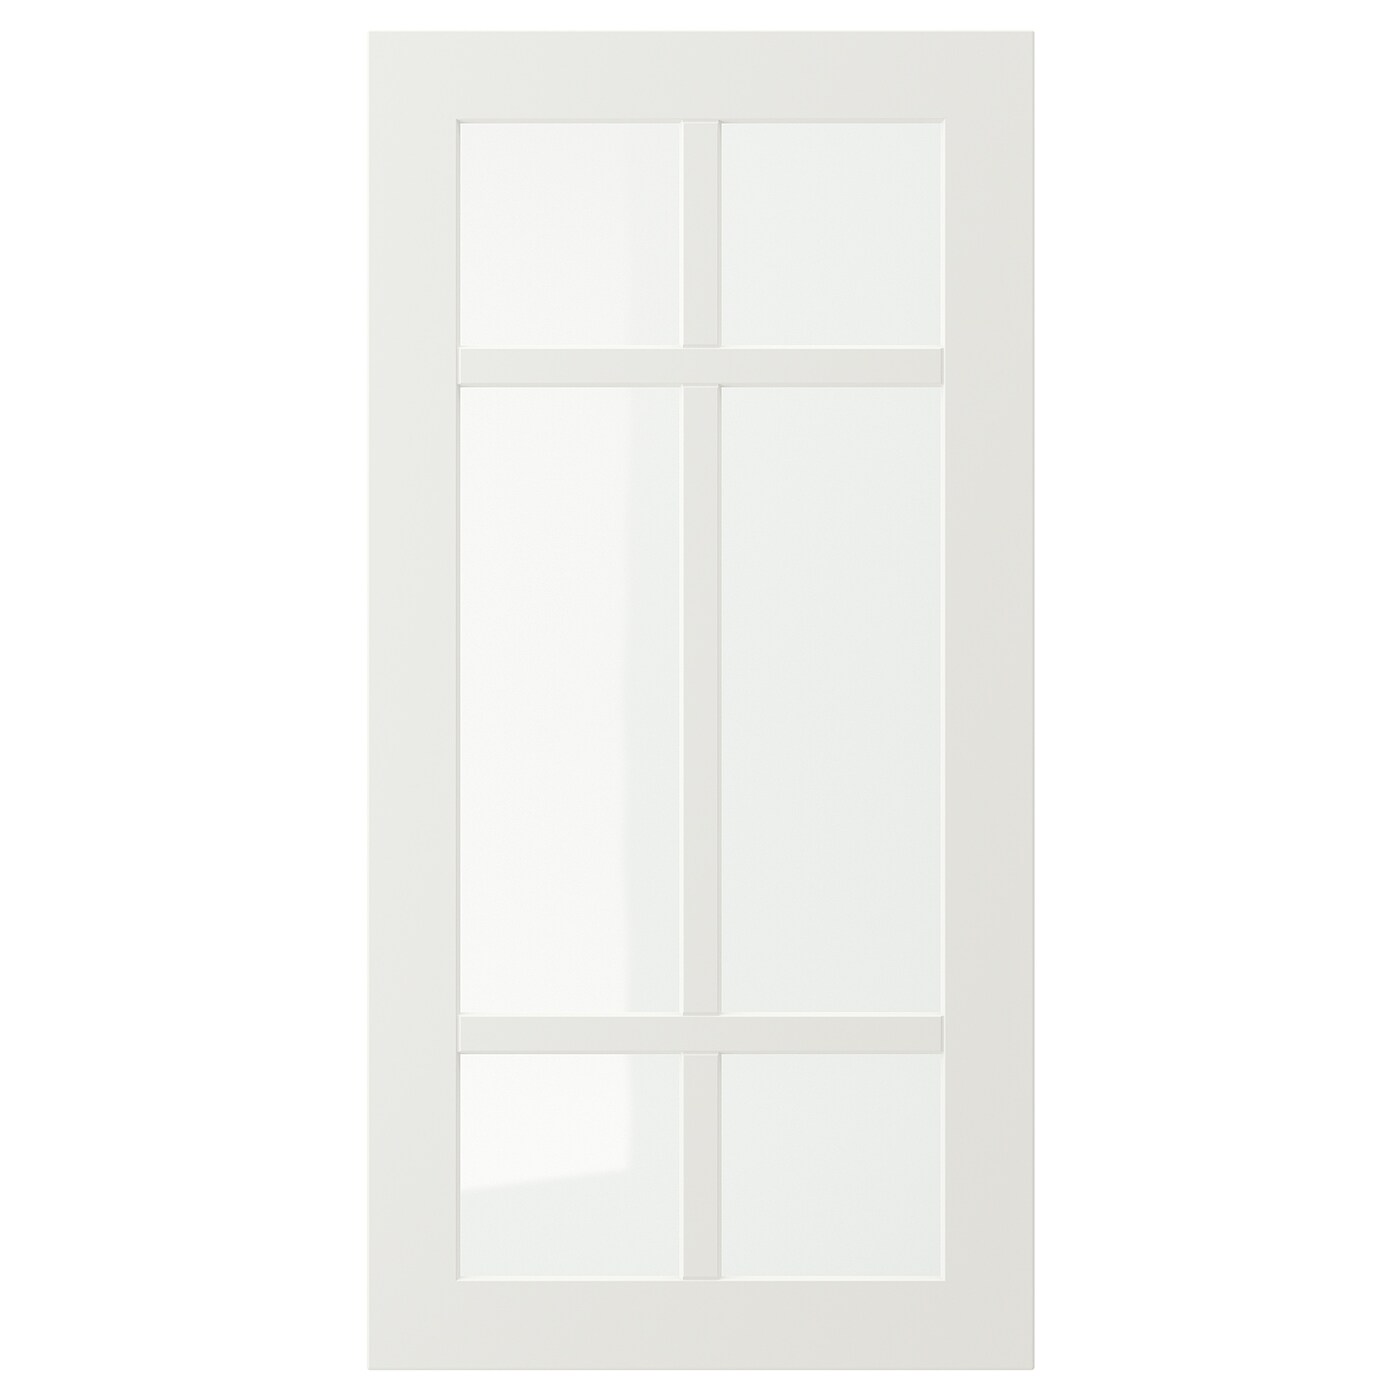 Дверца со стеклом - IKEA STENSUND, 80х40 см, белый, СТЕНСУНД ИКЕА